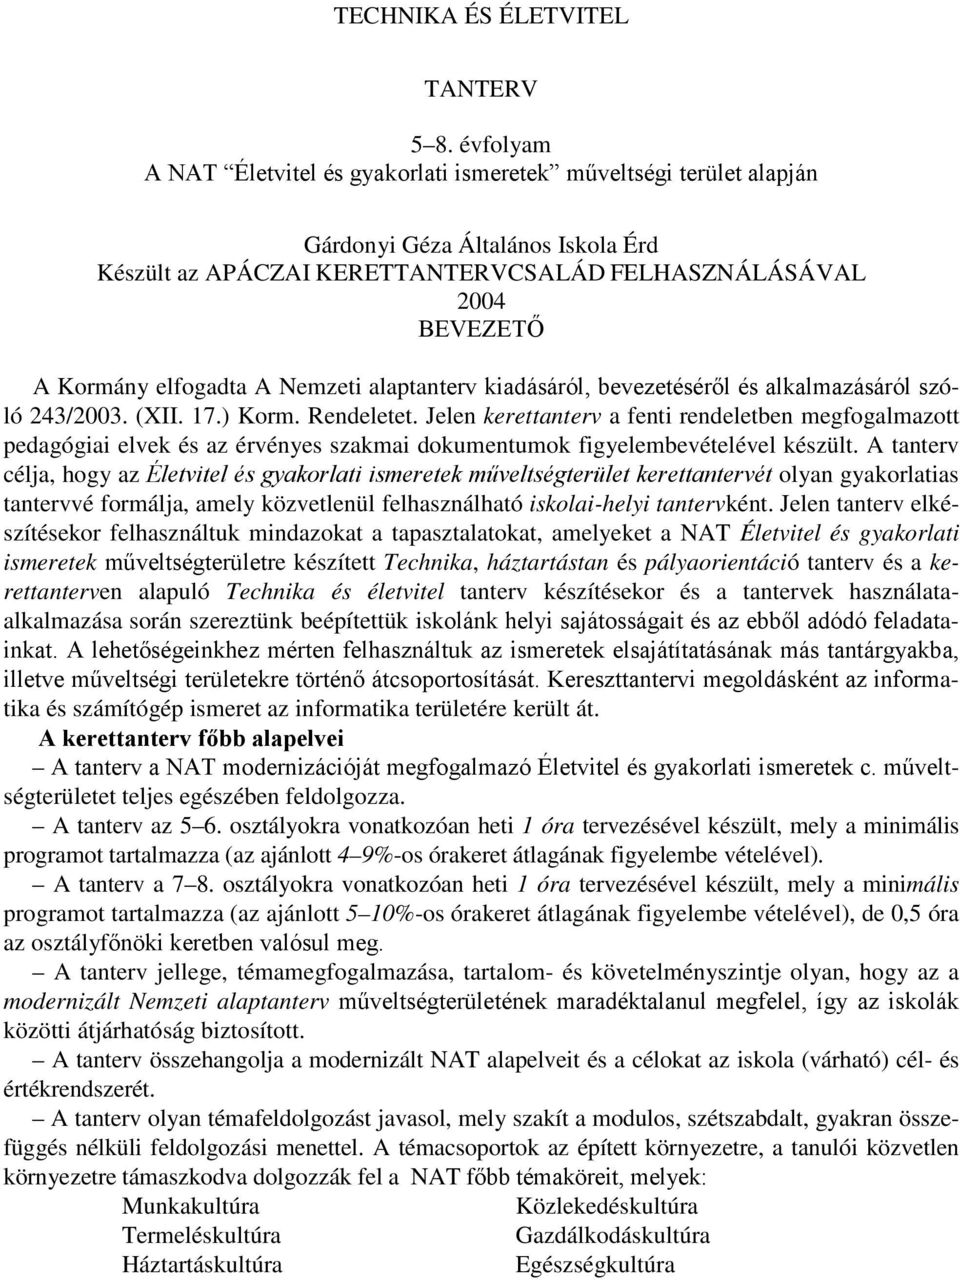 A Nemzeti alaptanterv kiadásáról, bevezetéséről és alkalmazásáról szóló 243/2003. (XII. 17.) Korm. Rendeletet.